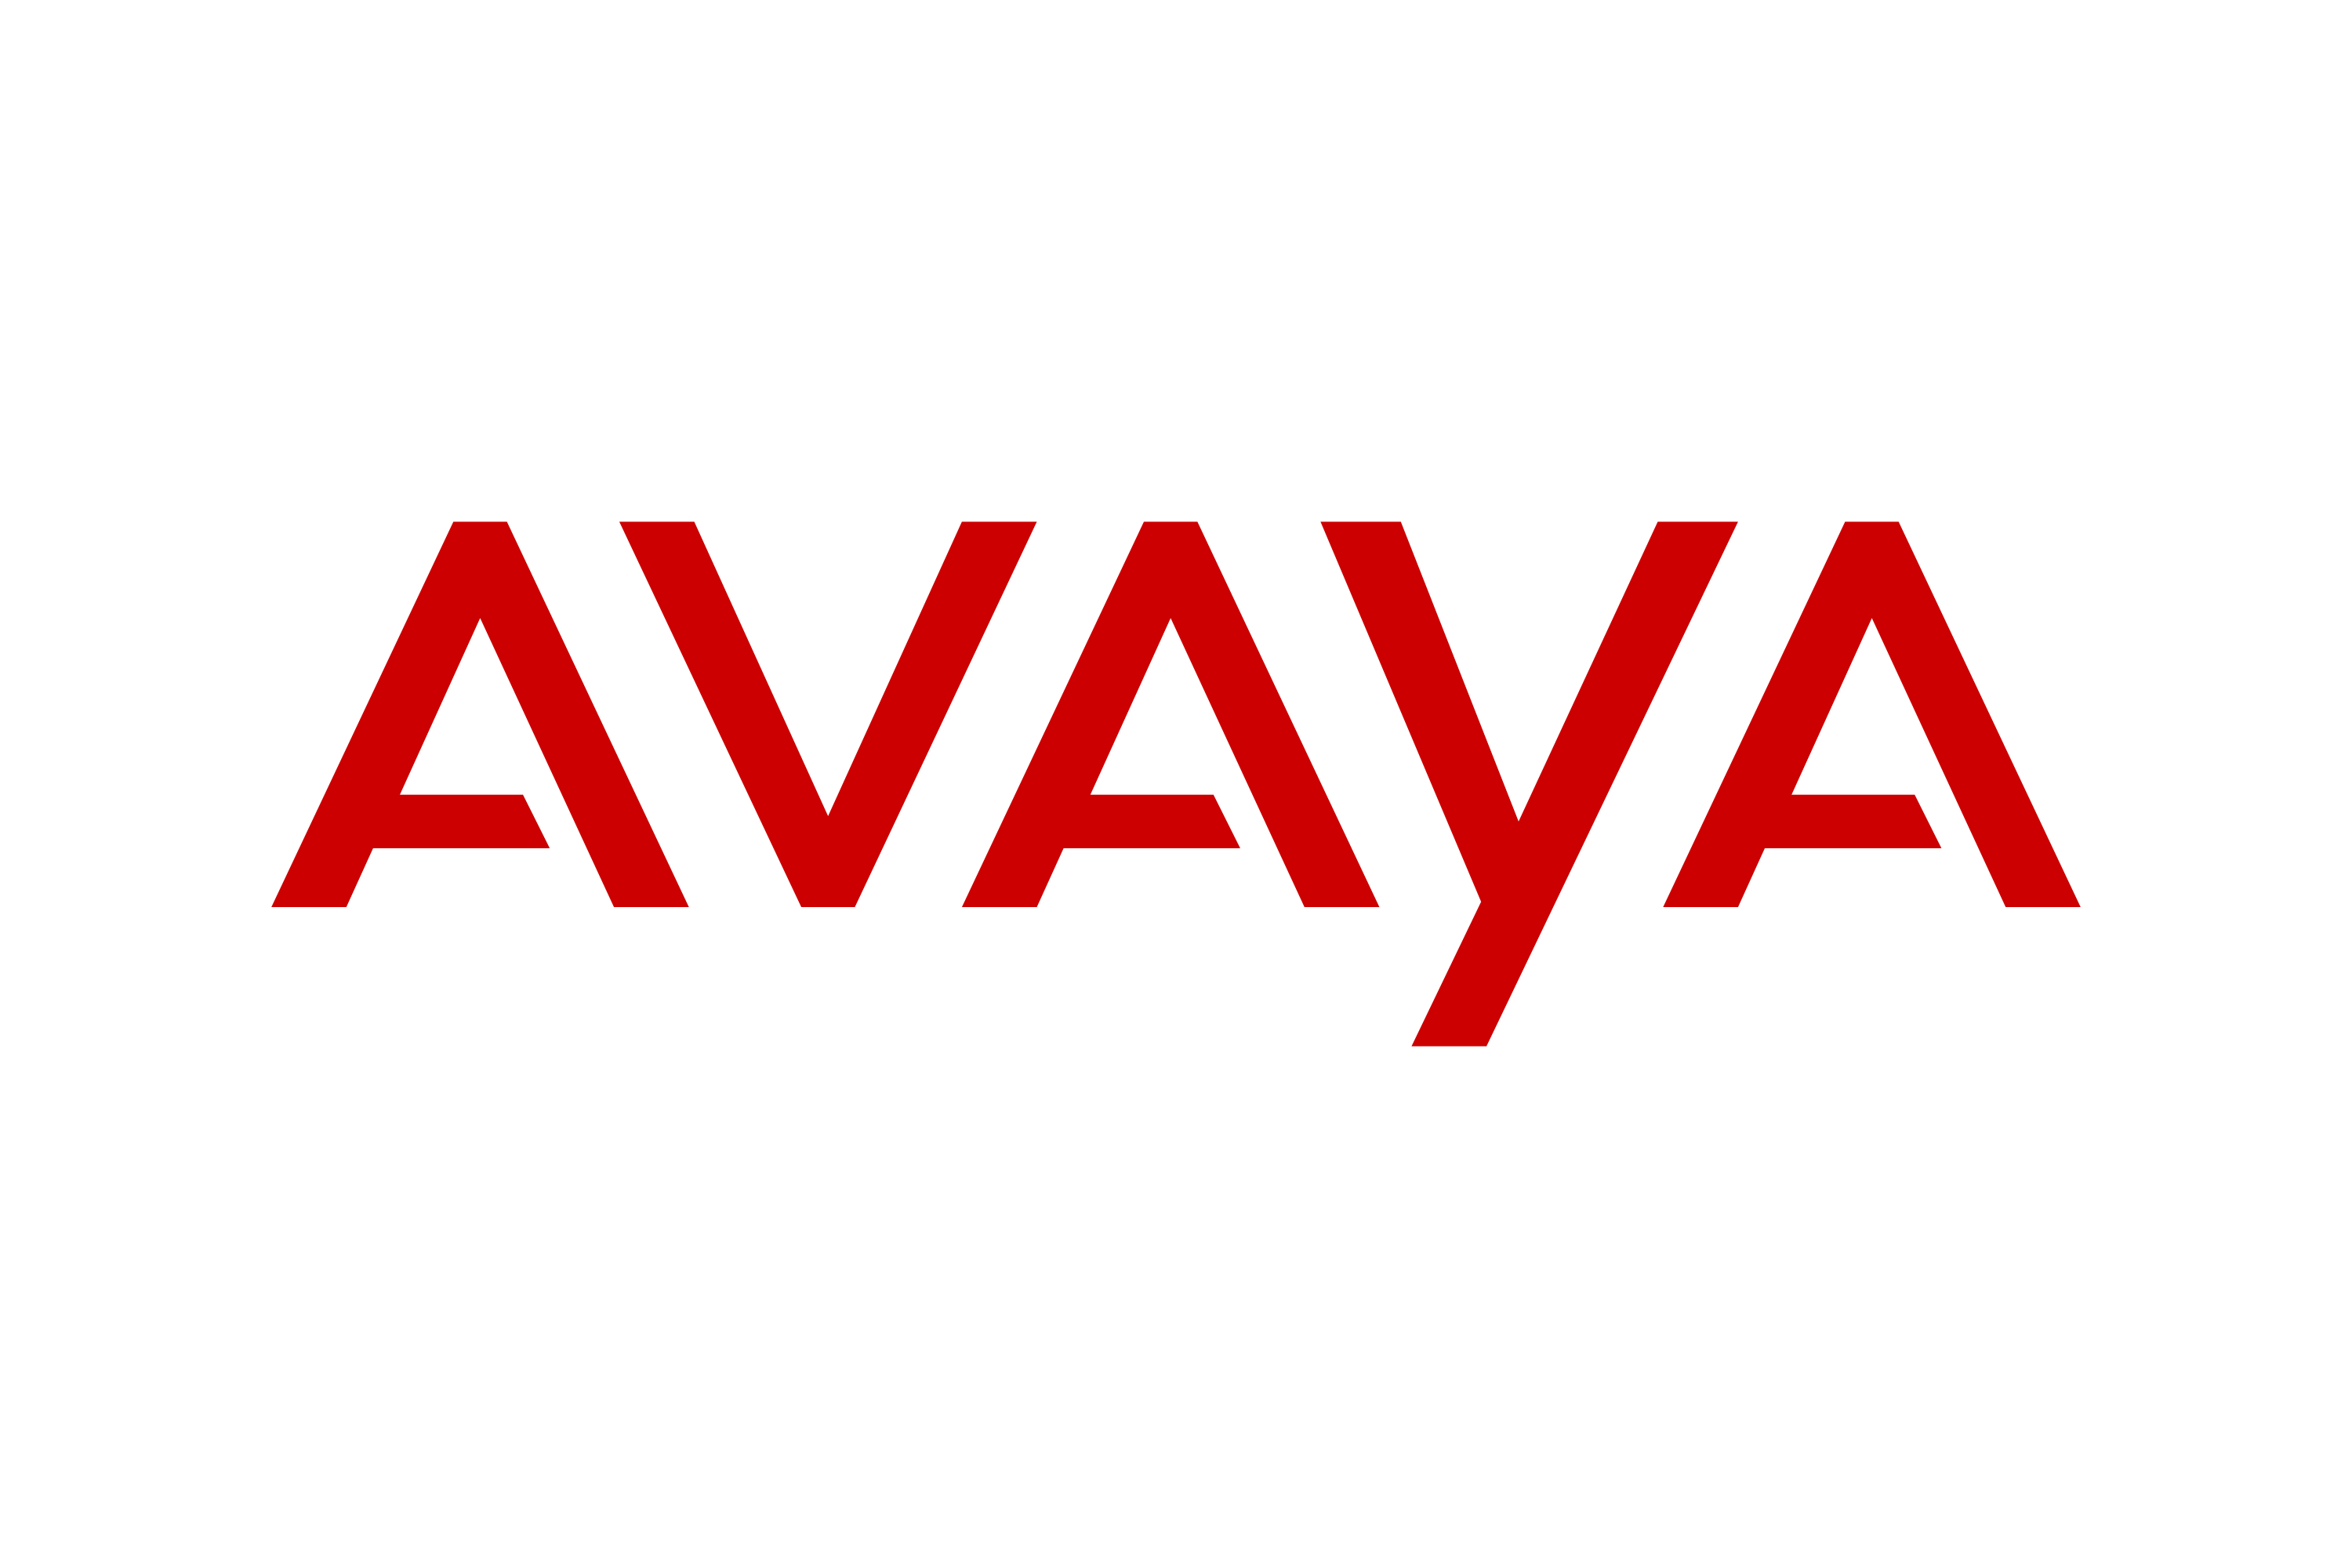 Download Avaya Logo in SVG Vector or PNG File Format - Logo.wine